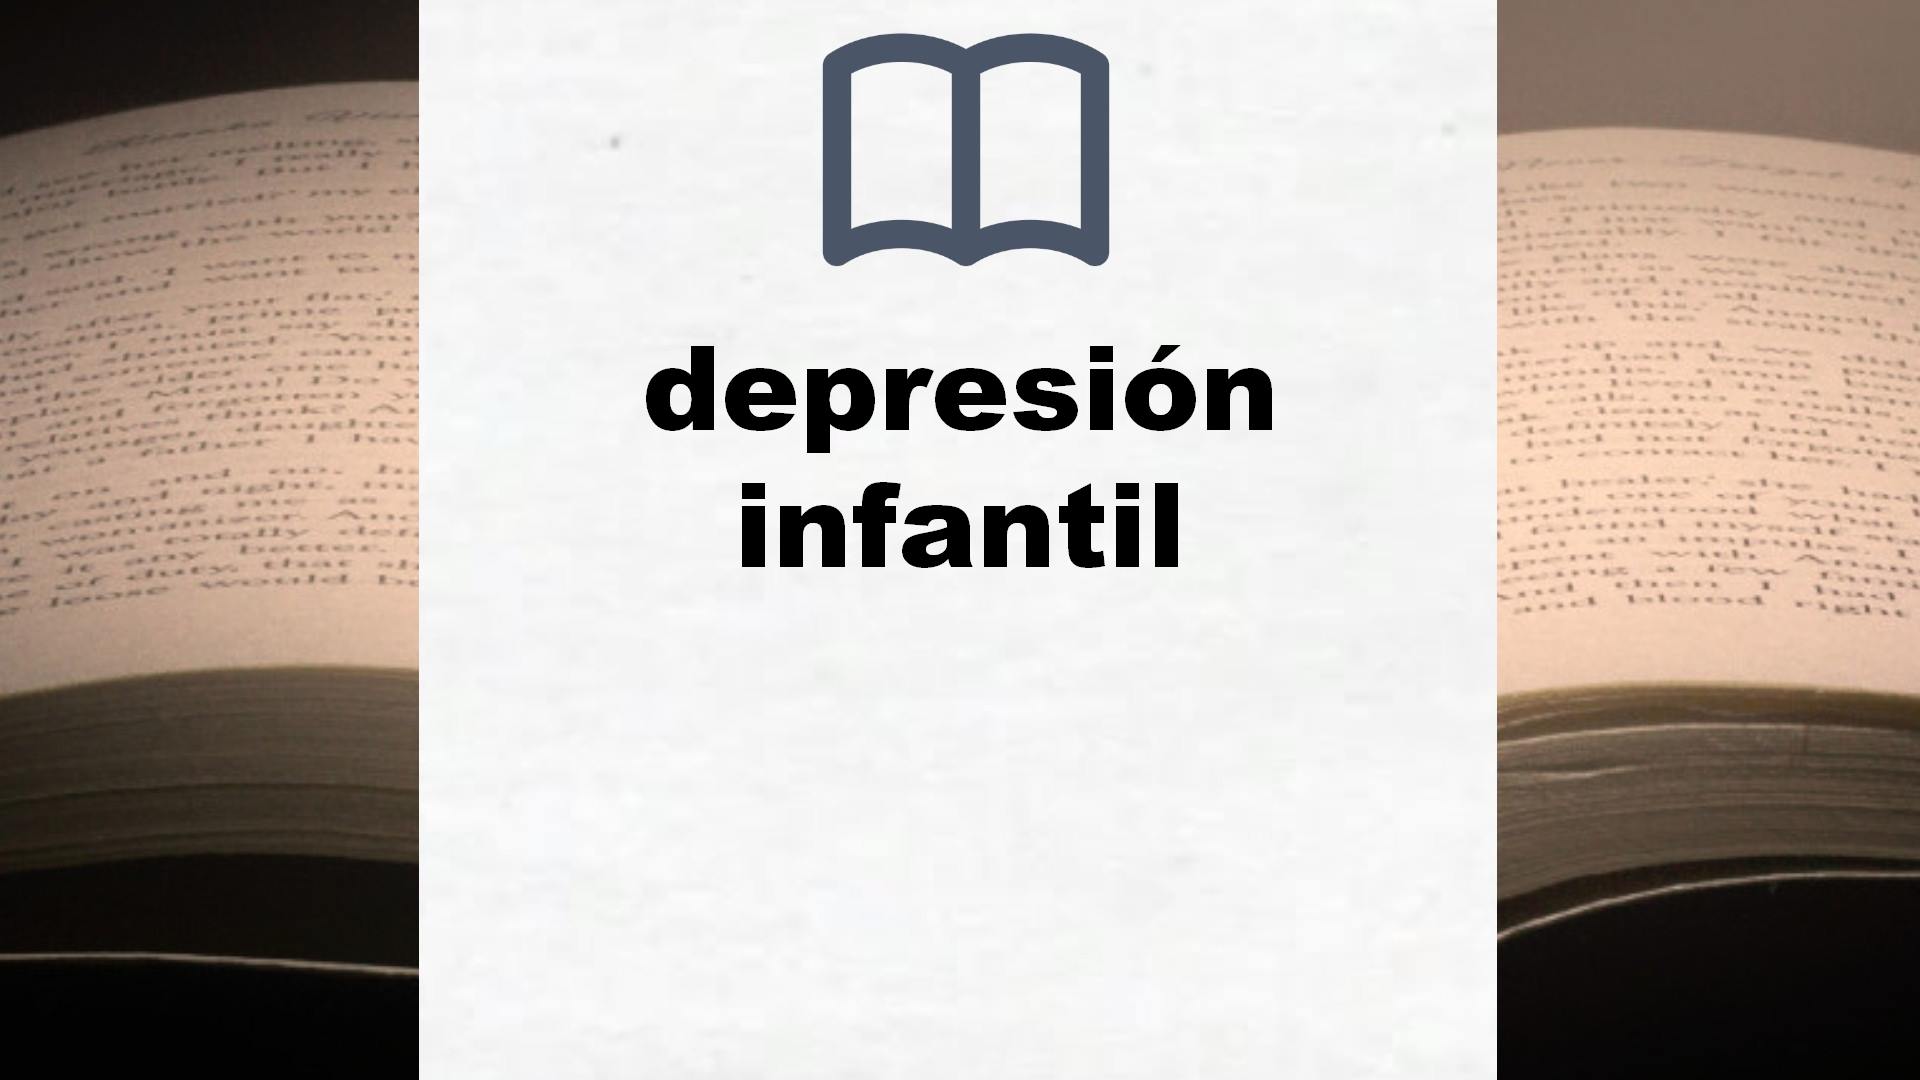 Libros sobre depresión infantil